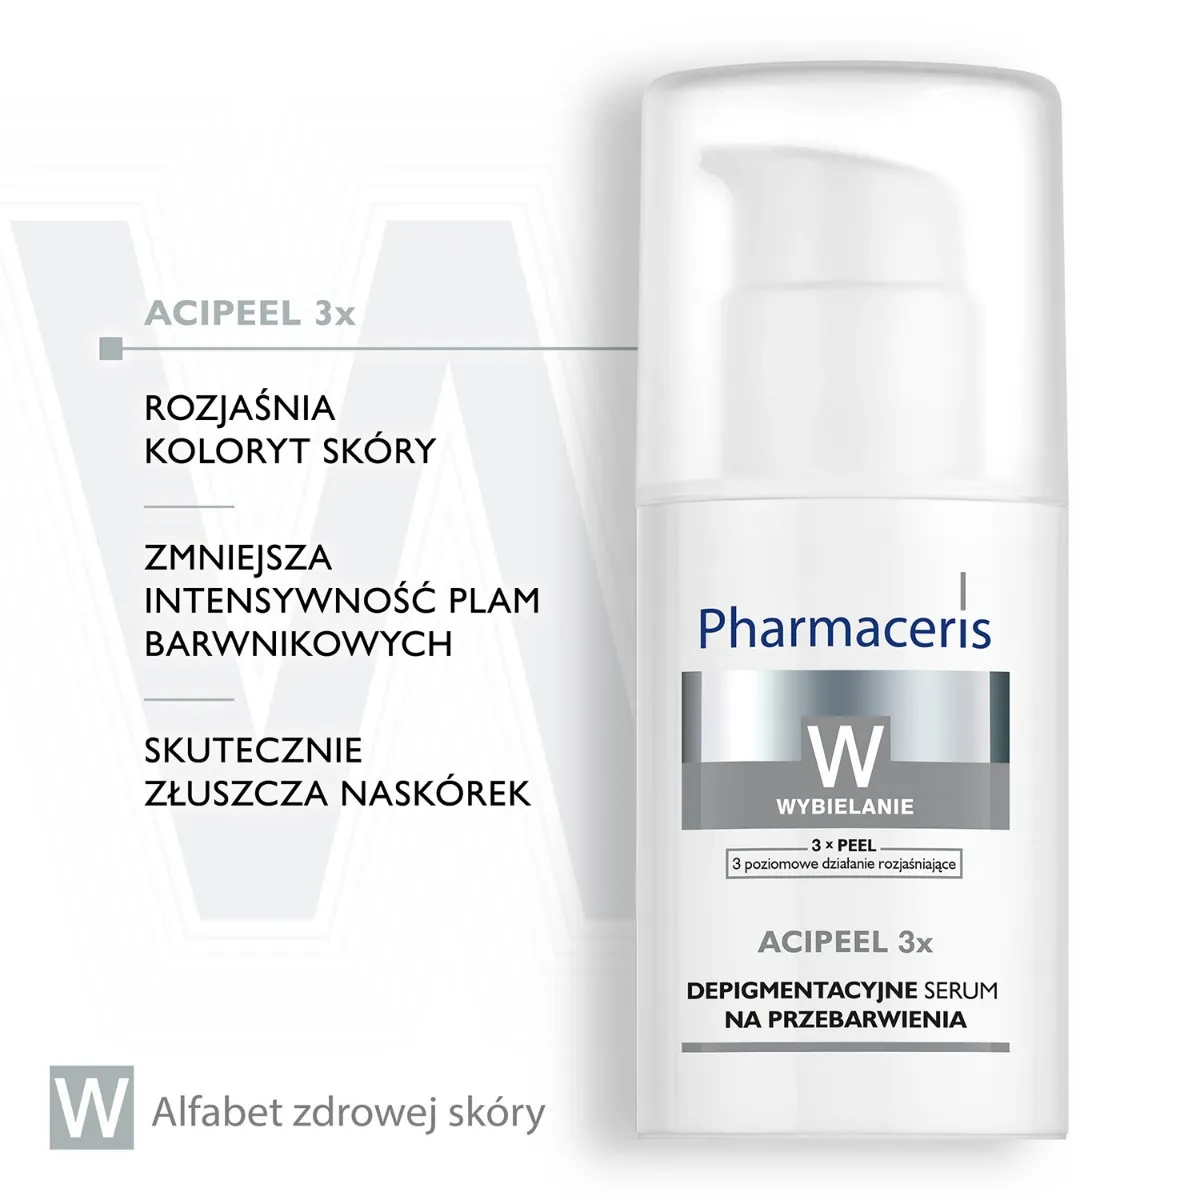 Pharmaceris W, Acipeel 3x, depigmentacyjne serum na przebarwienia, 30 ml 